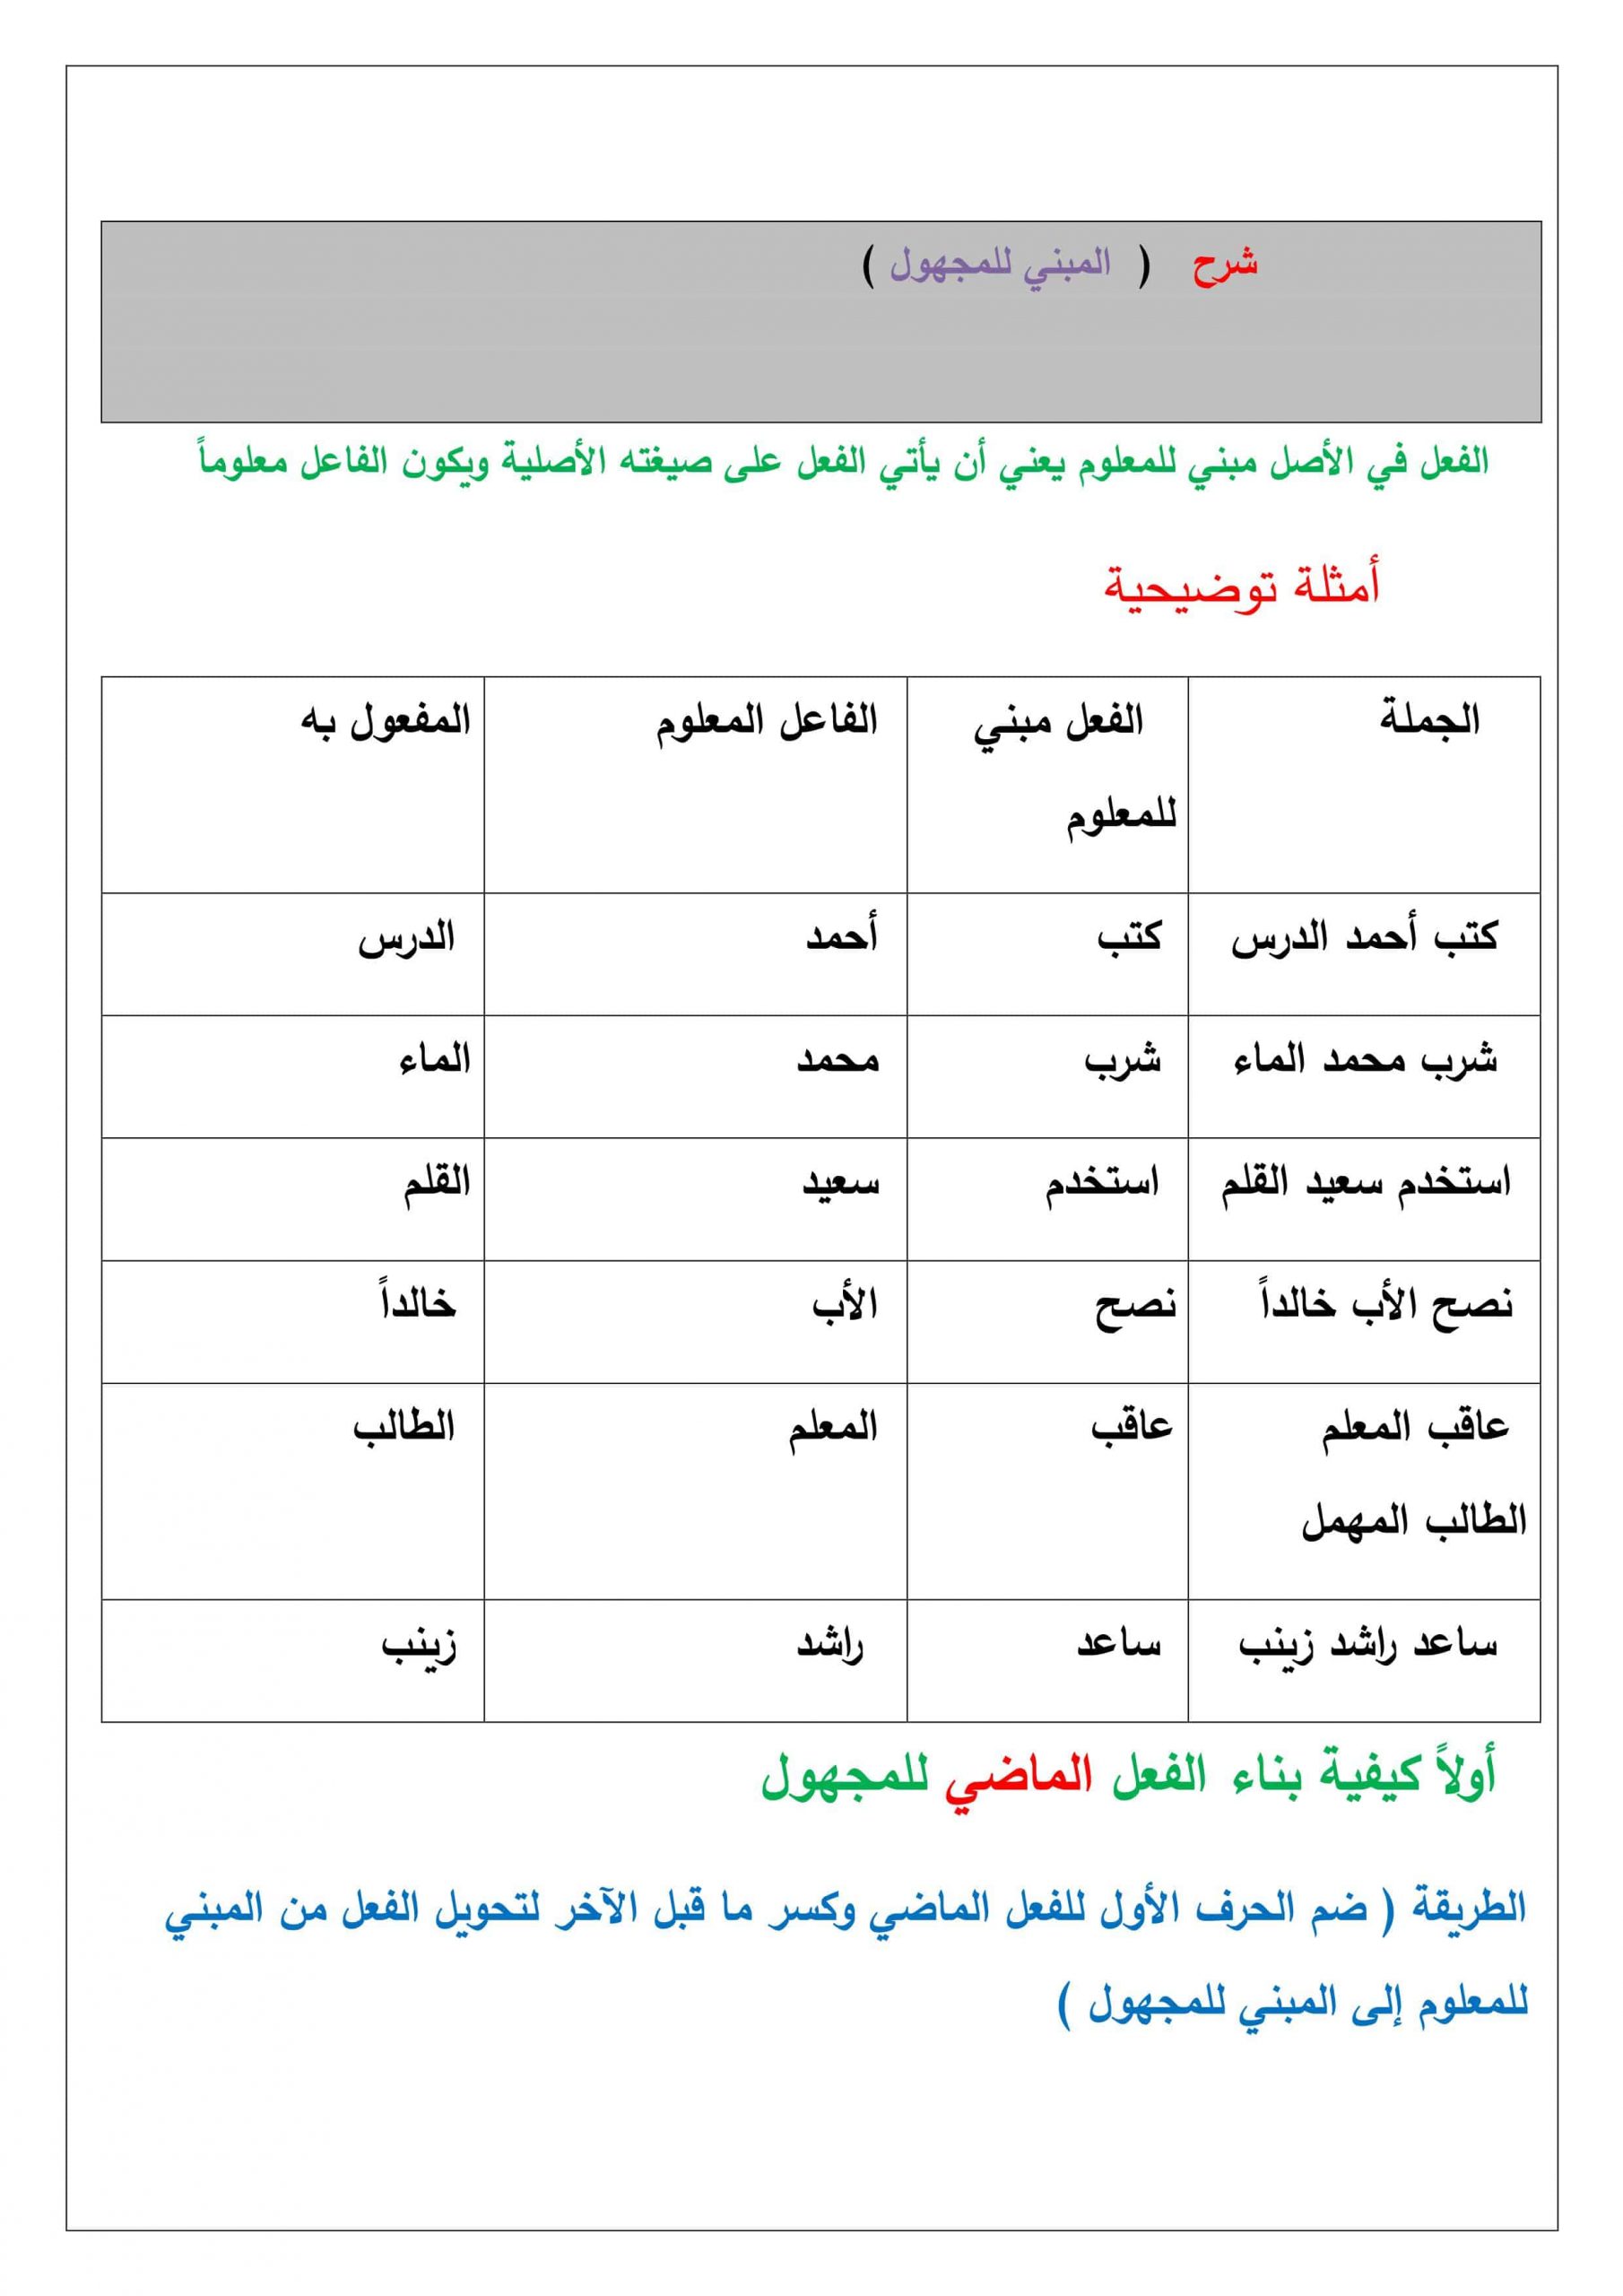 شرح درس المبني للمجهول الفصل الدراسي الثالث الصف السابع مادة اللغة العربية 